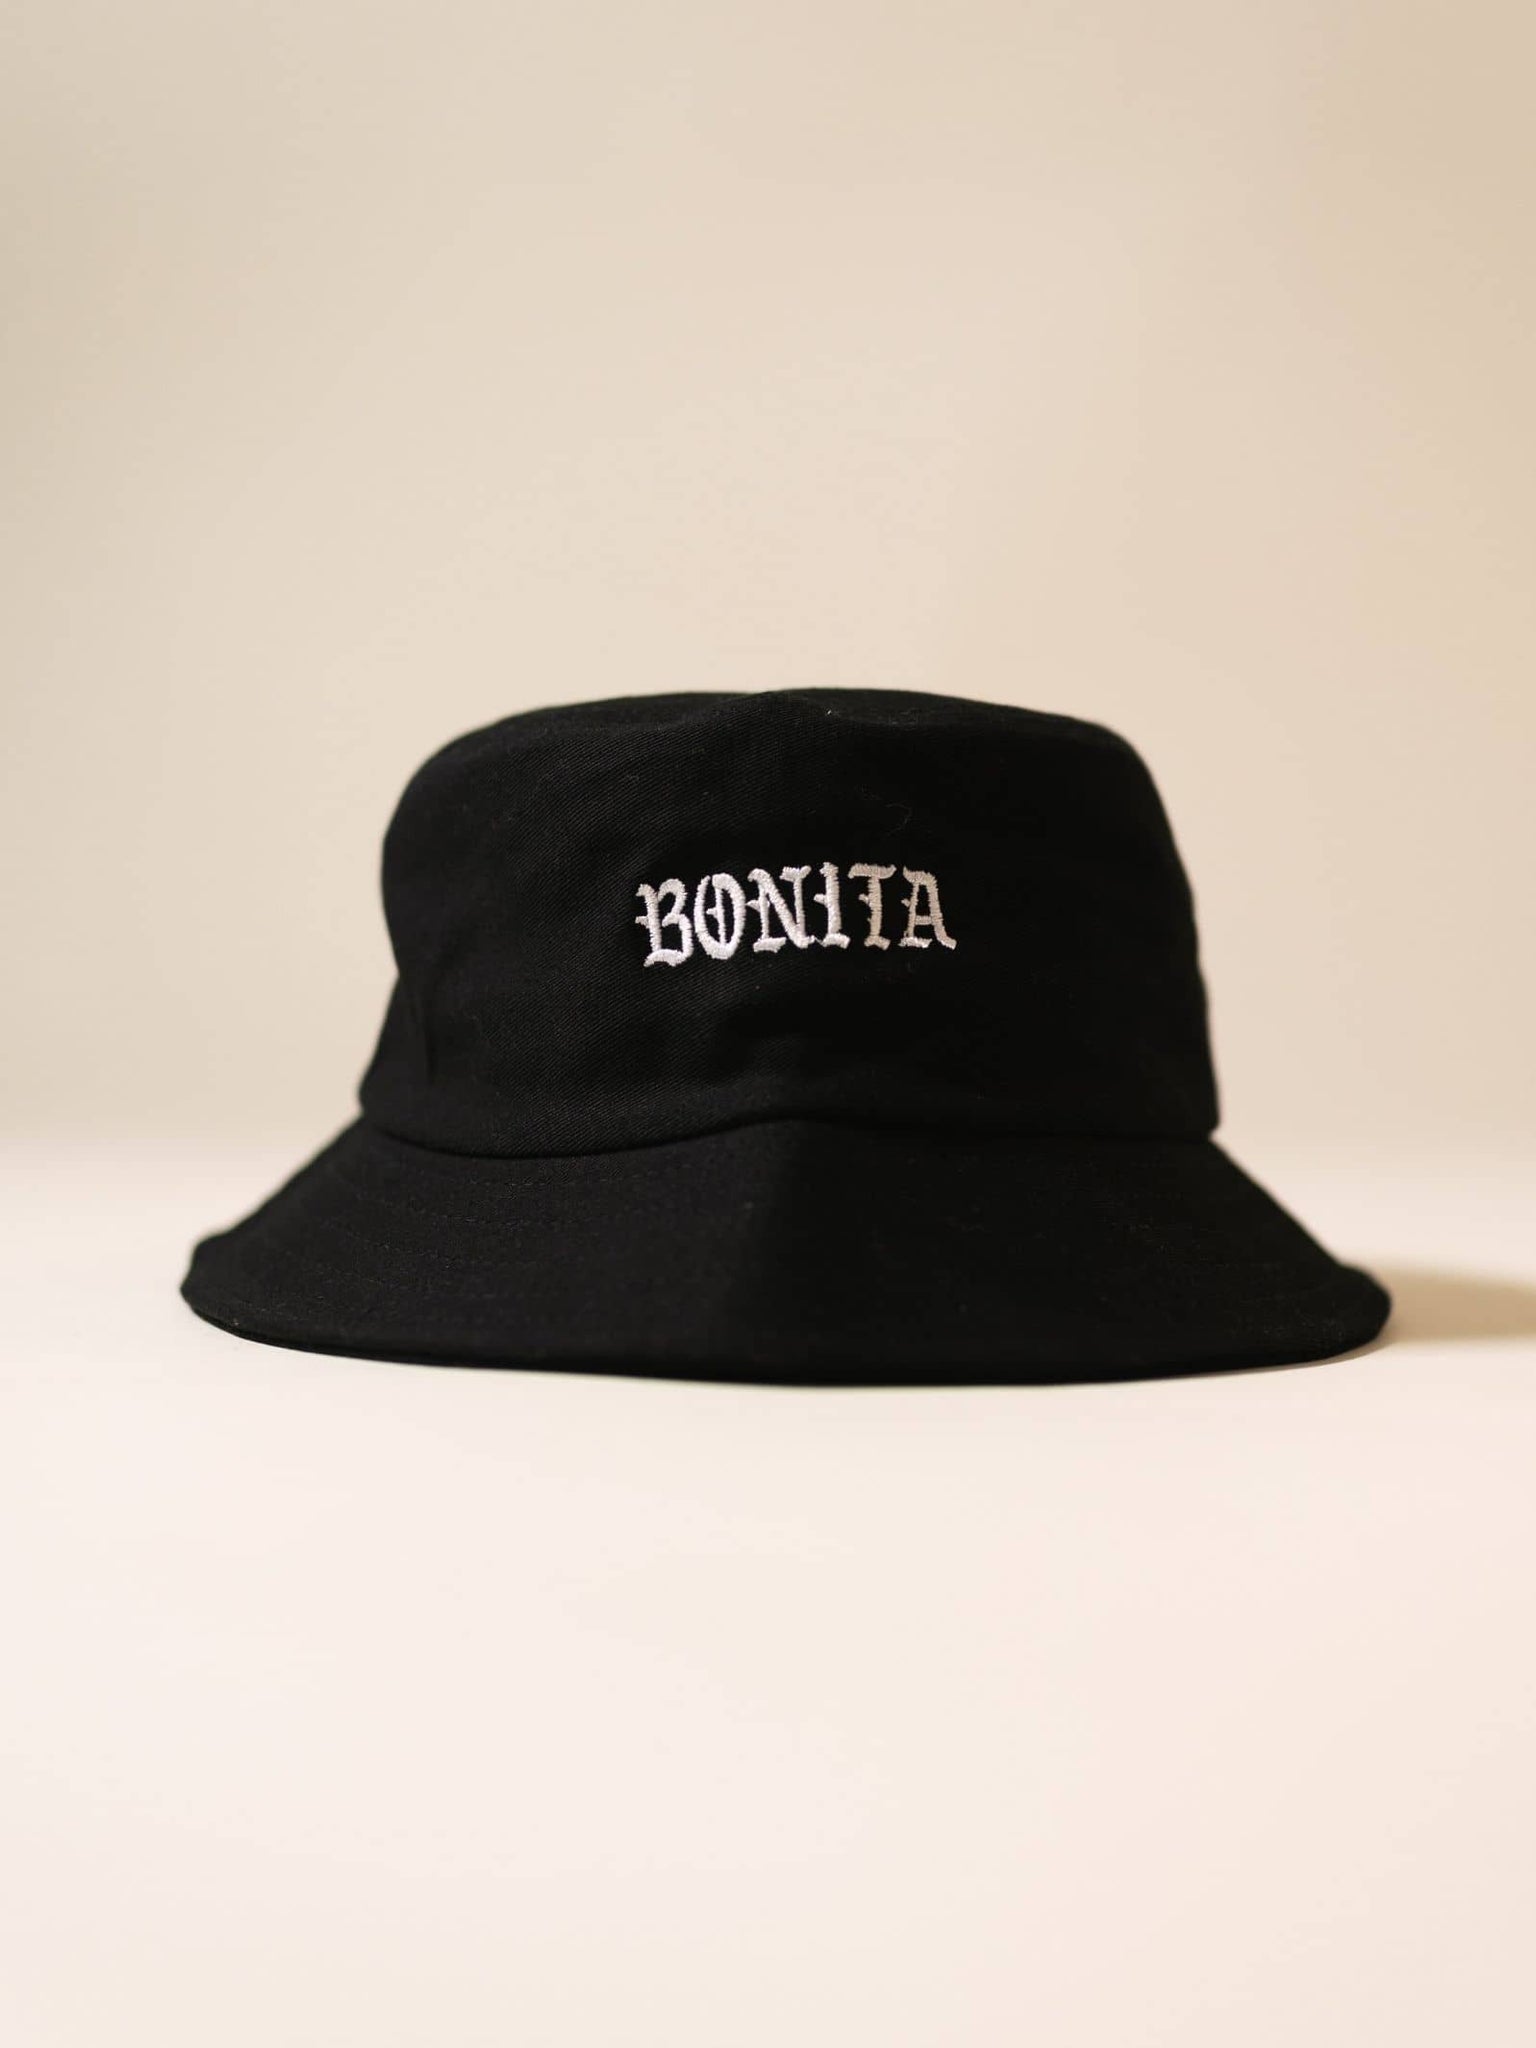 Viva La Bonita Women streetwear black Bonita Bucket hat flatlay.